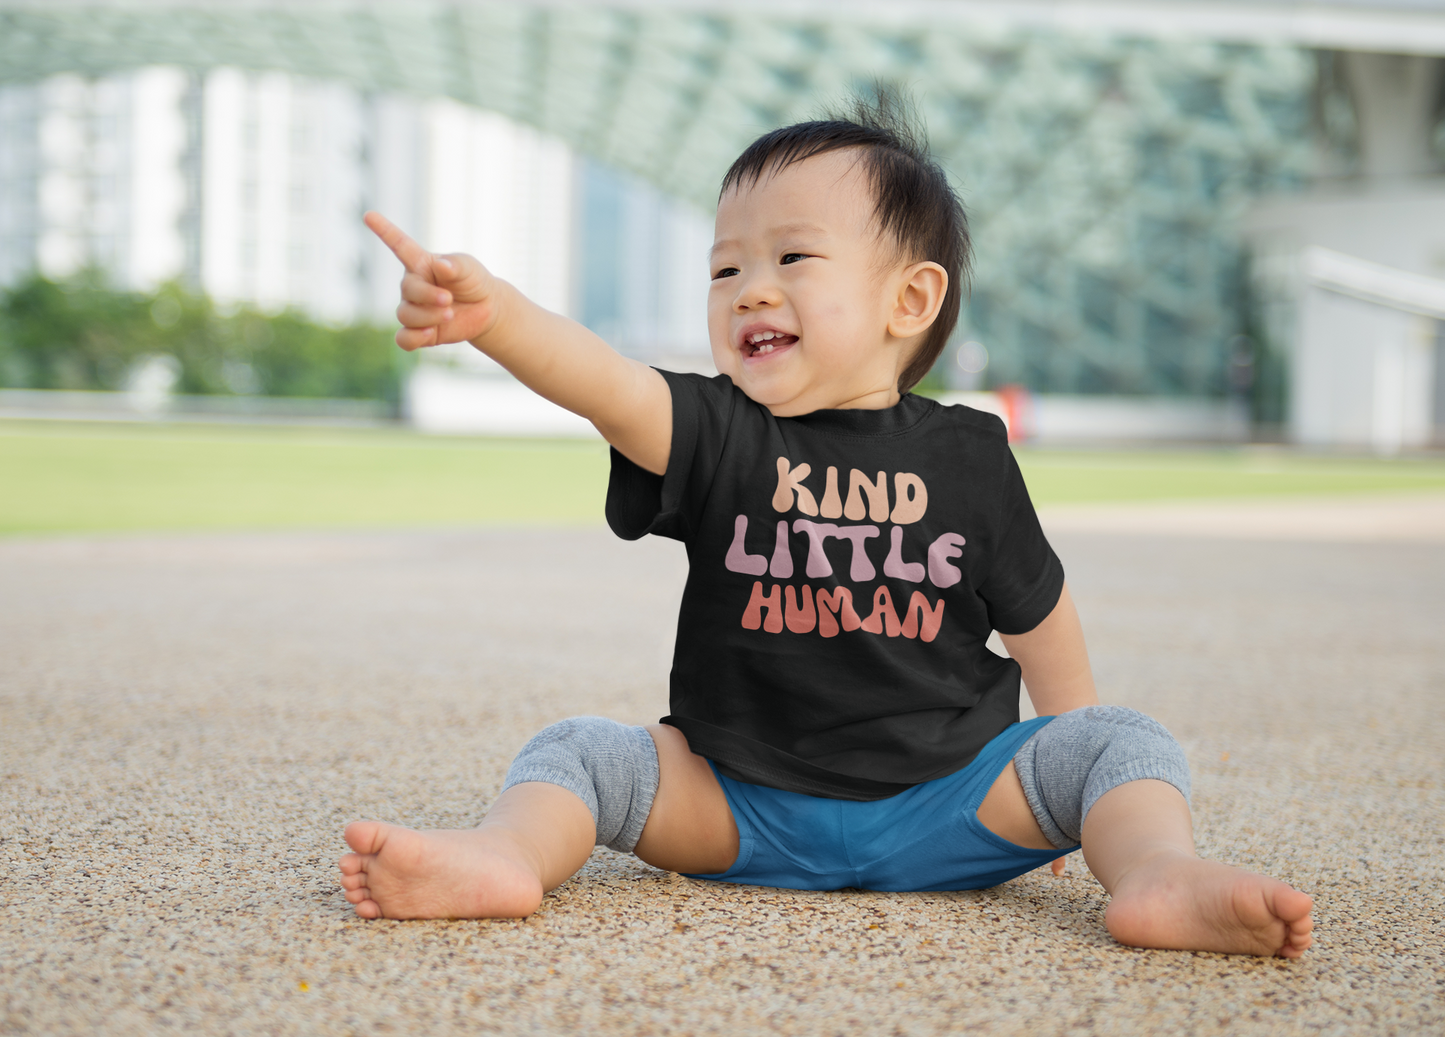 Kind Little Human Toddler's T-shirt